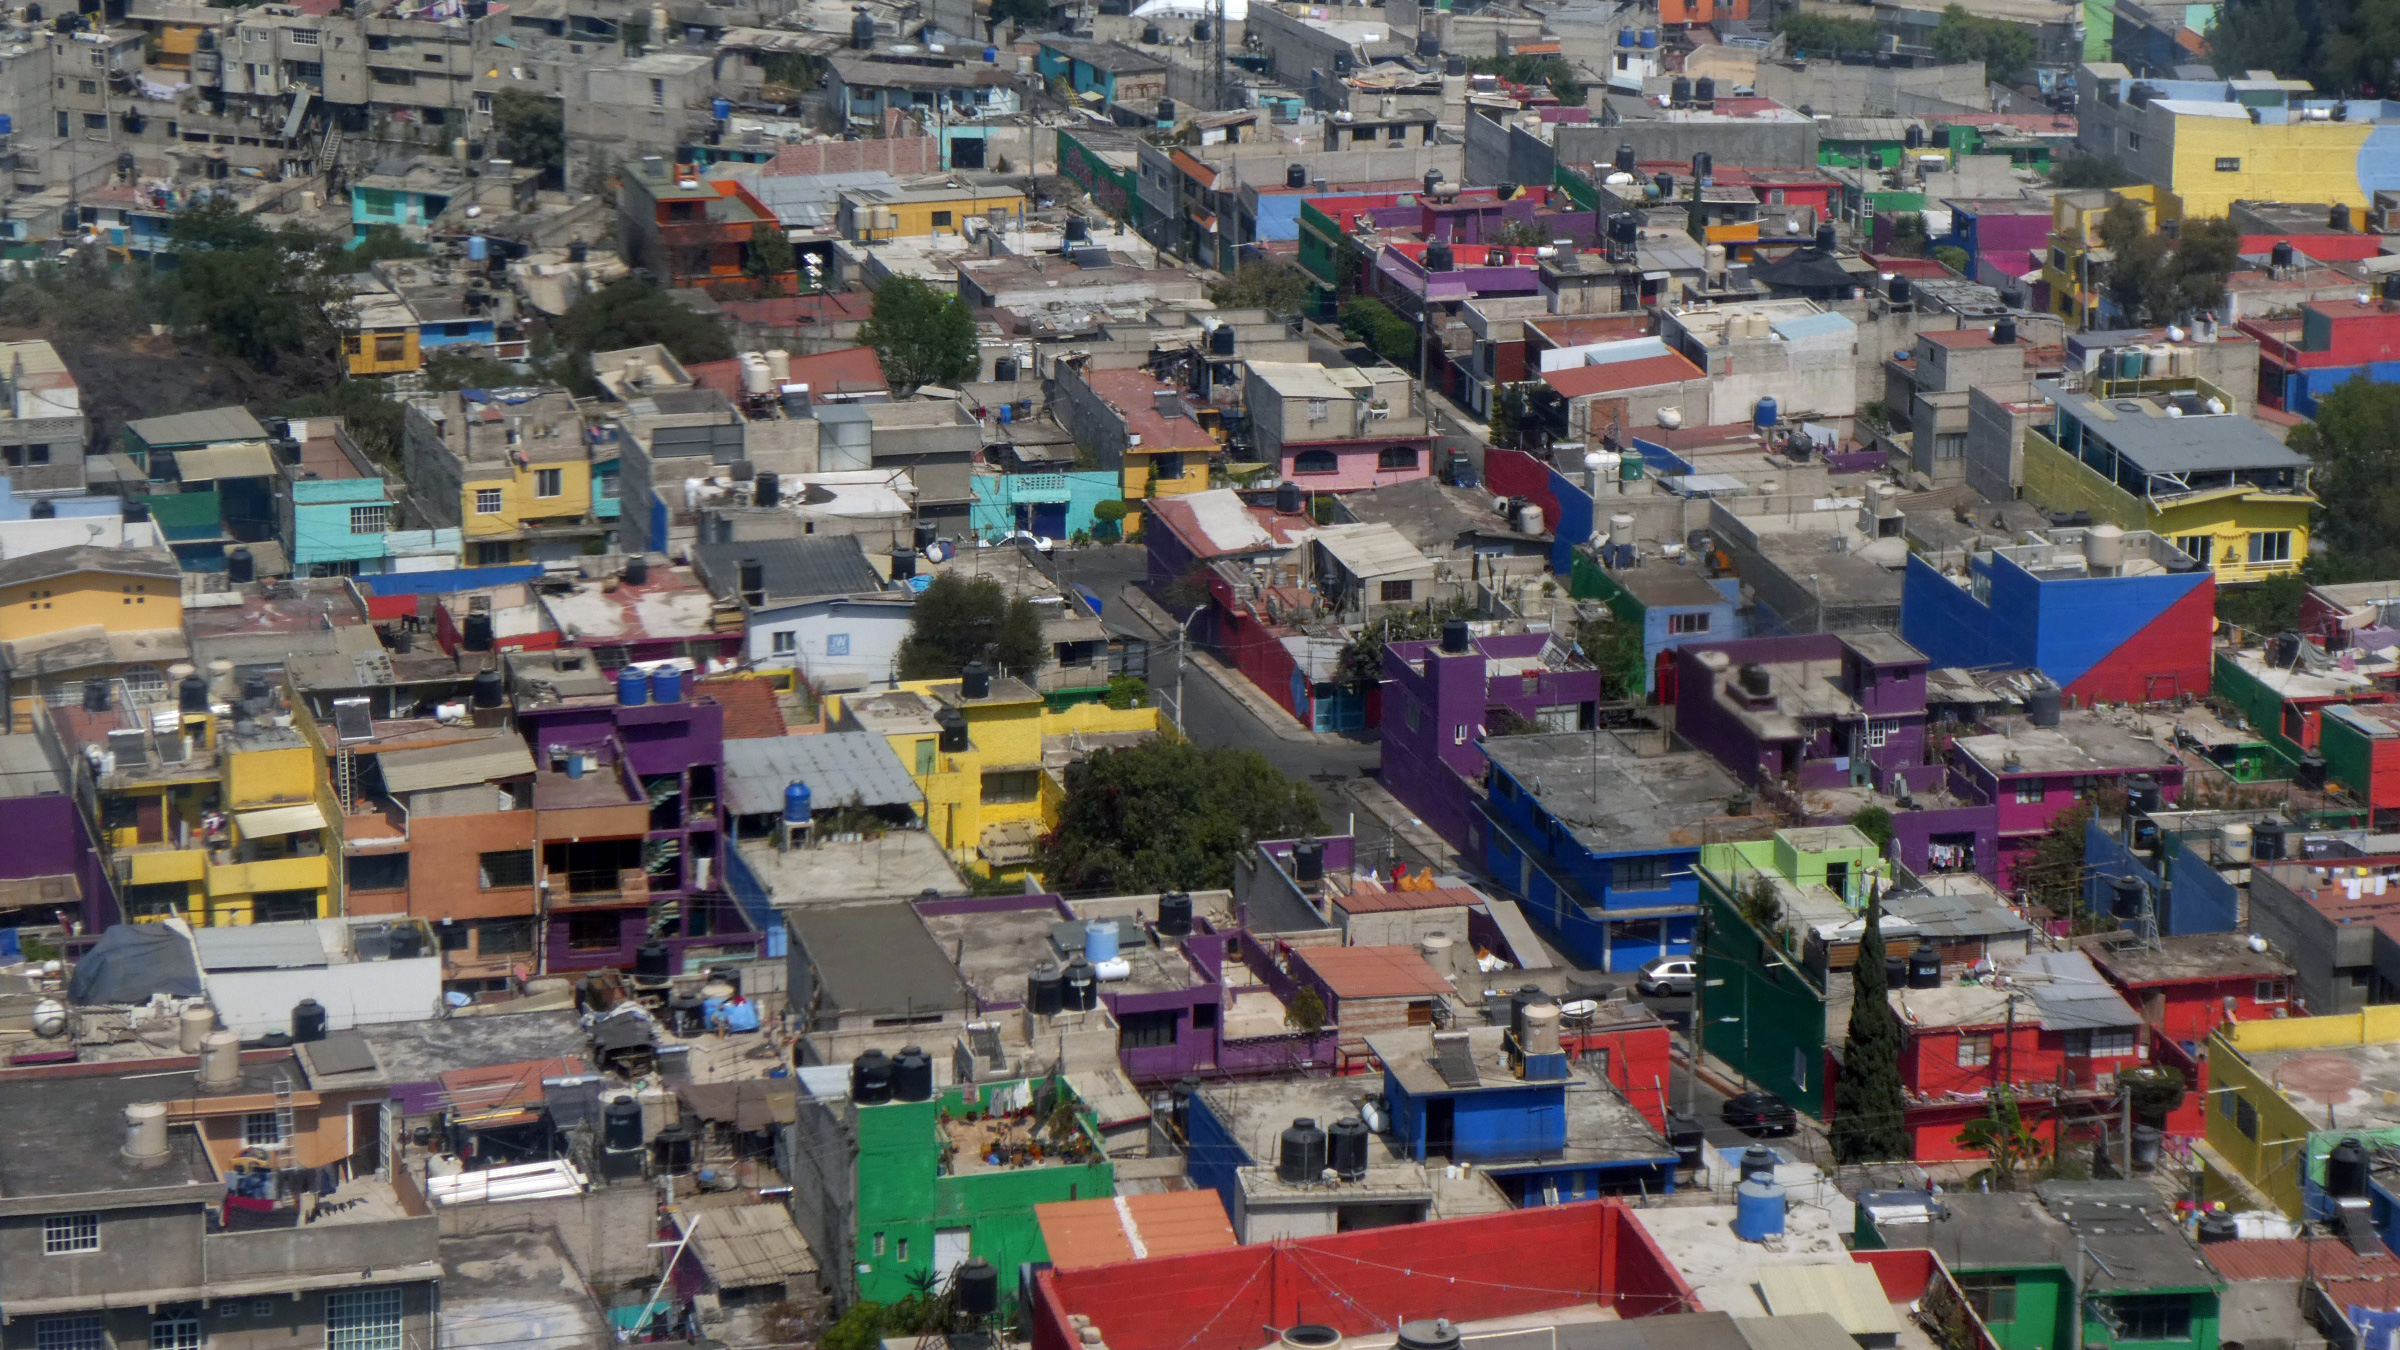 Les bâtiments colorés du quartier d'Itzapalapa, au sud de Mexico